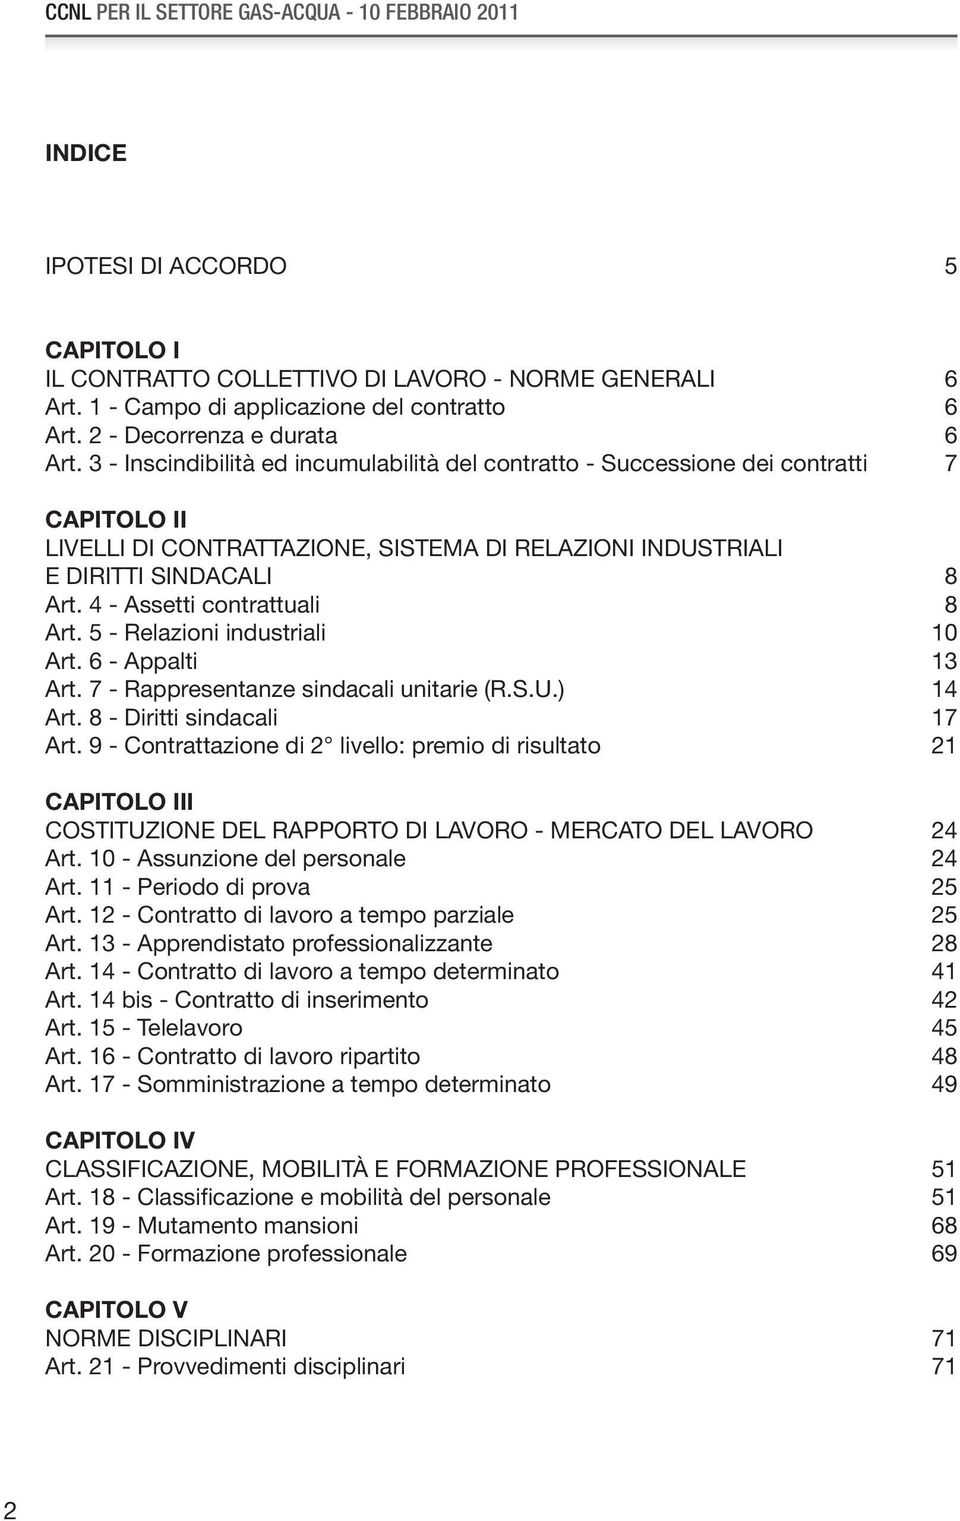 3 - Inscindibilità ed incumulabilità del contratto - Successione dei contratti 7 CAPITOLO II LIVELLI DI CONTRATTAZIONE, SISTEMA DI RELAZIONI INDUSTRIALI E DIRITTI SINDACALI 8 Art.